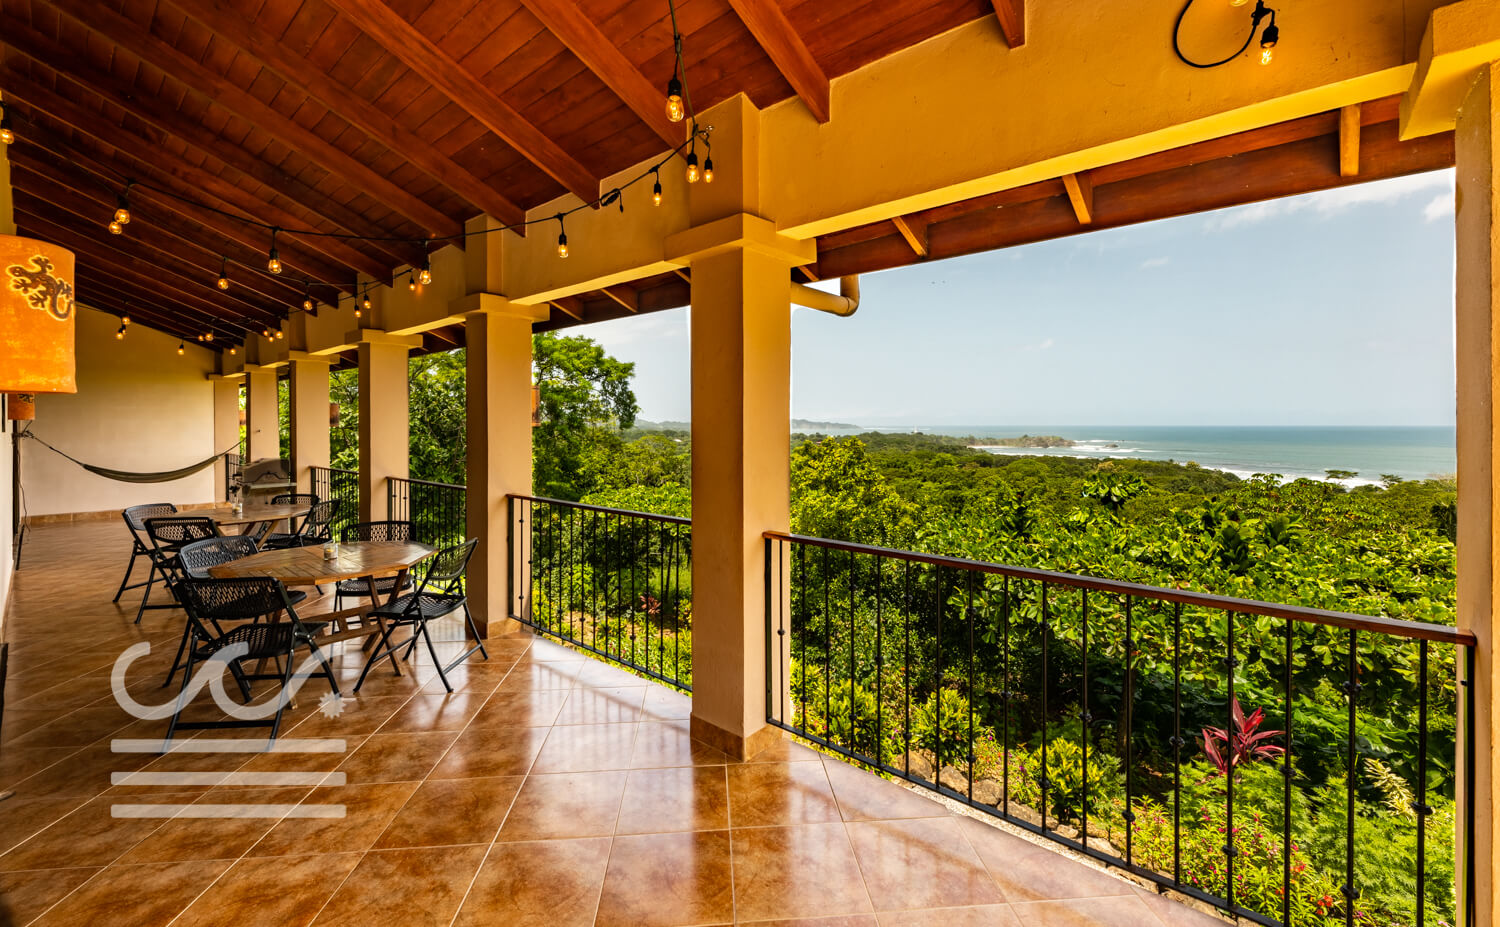 Casa-Carolina-Wanderlust-Realty-Real-Estate-Rentals-Nosara-Costa-Rica-8.jpg